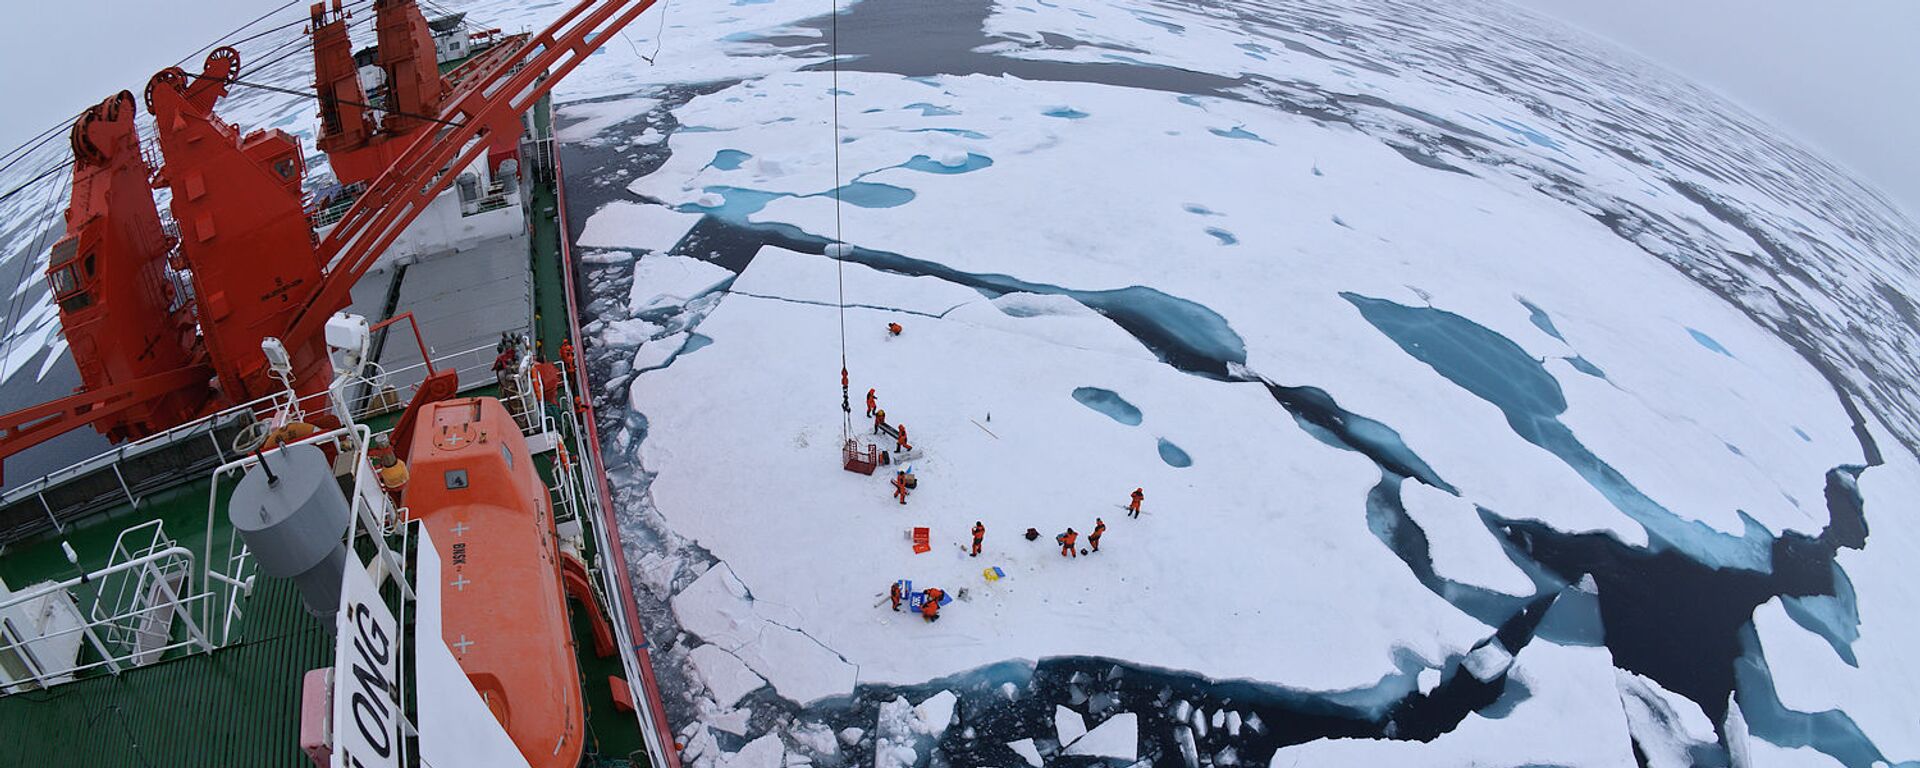 Арктические льды с борта китайского ледокола Xue Long - Sputnik 日本, 1920, 24.02.2021